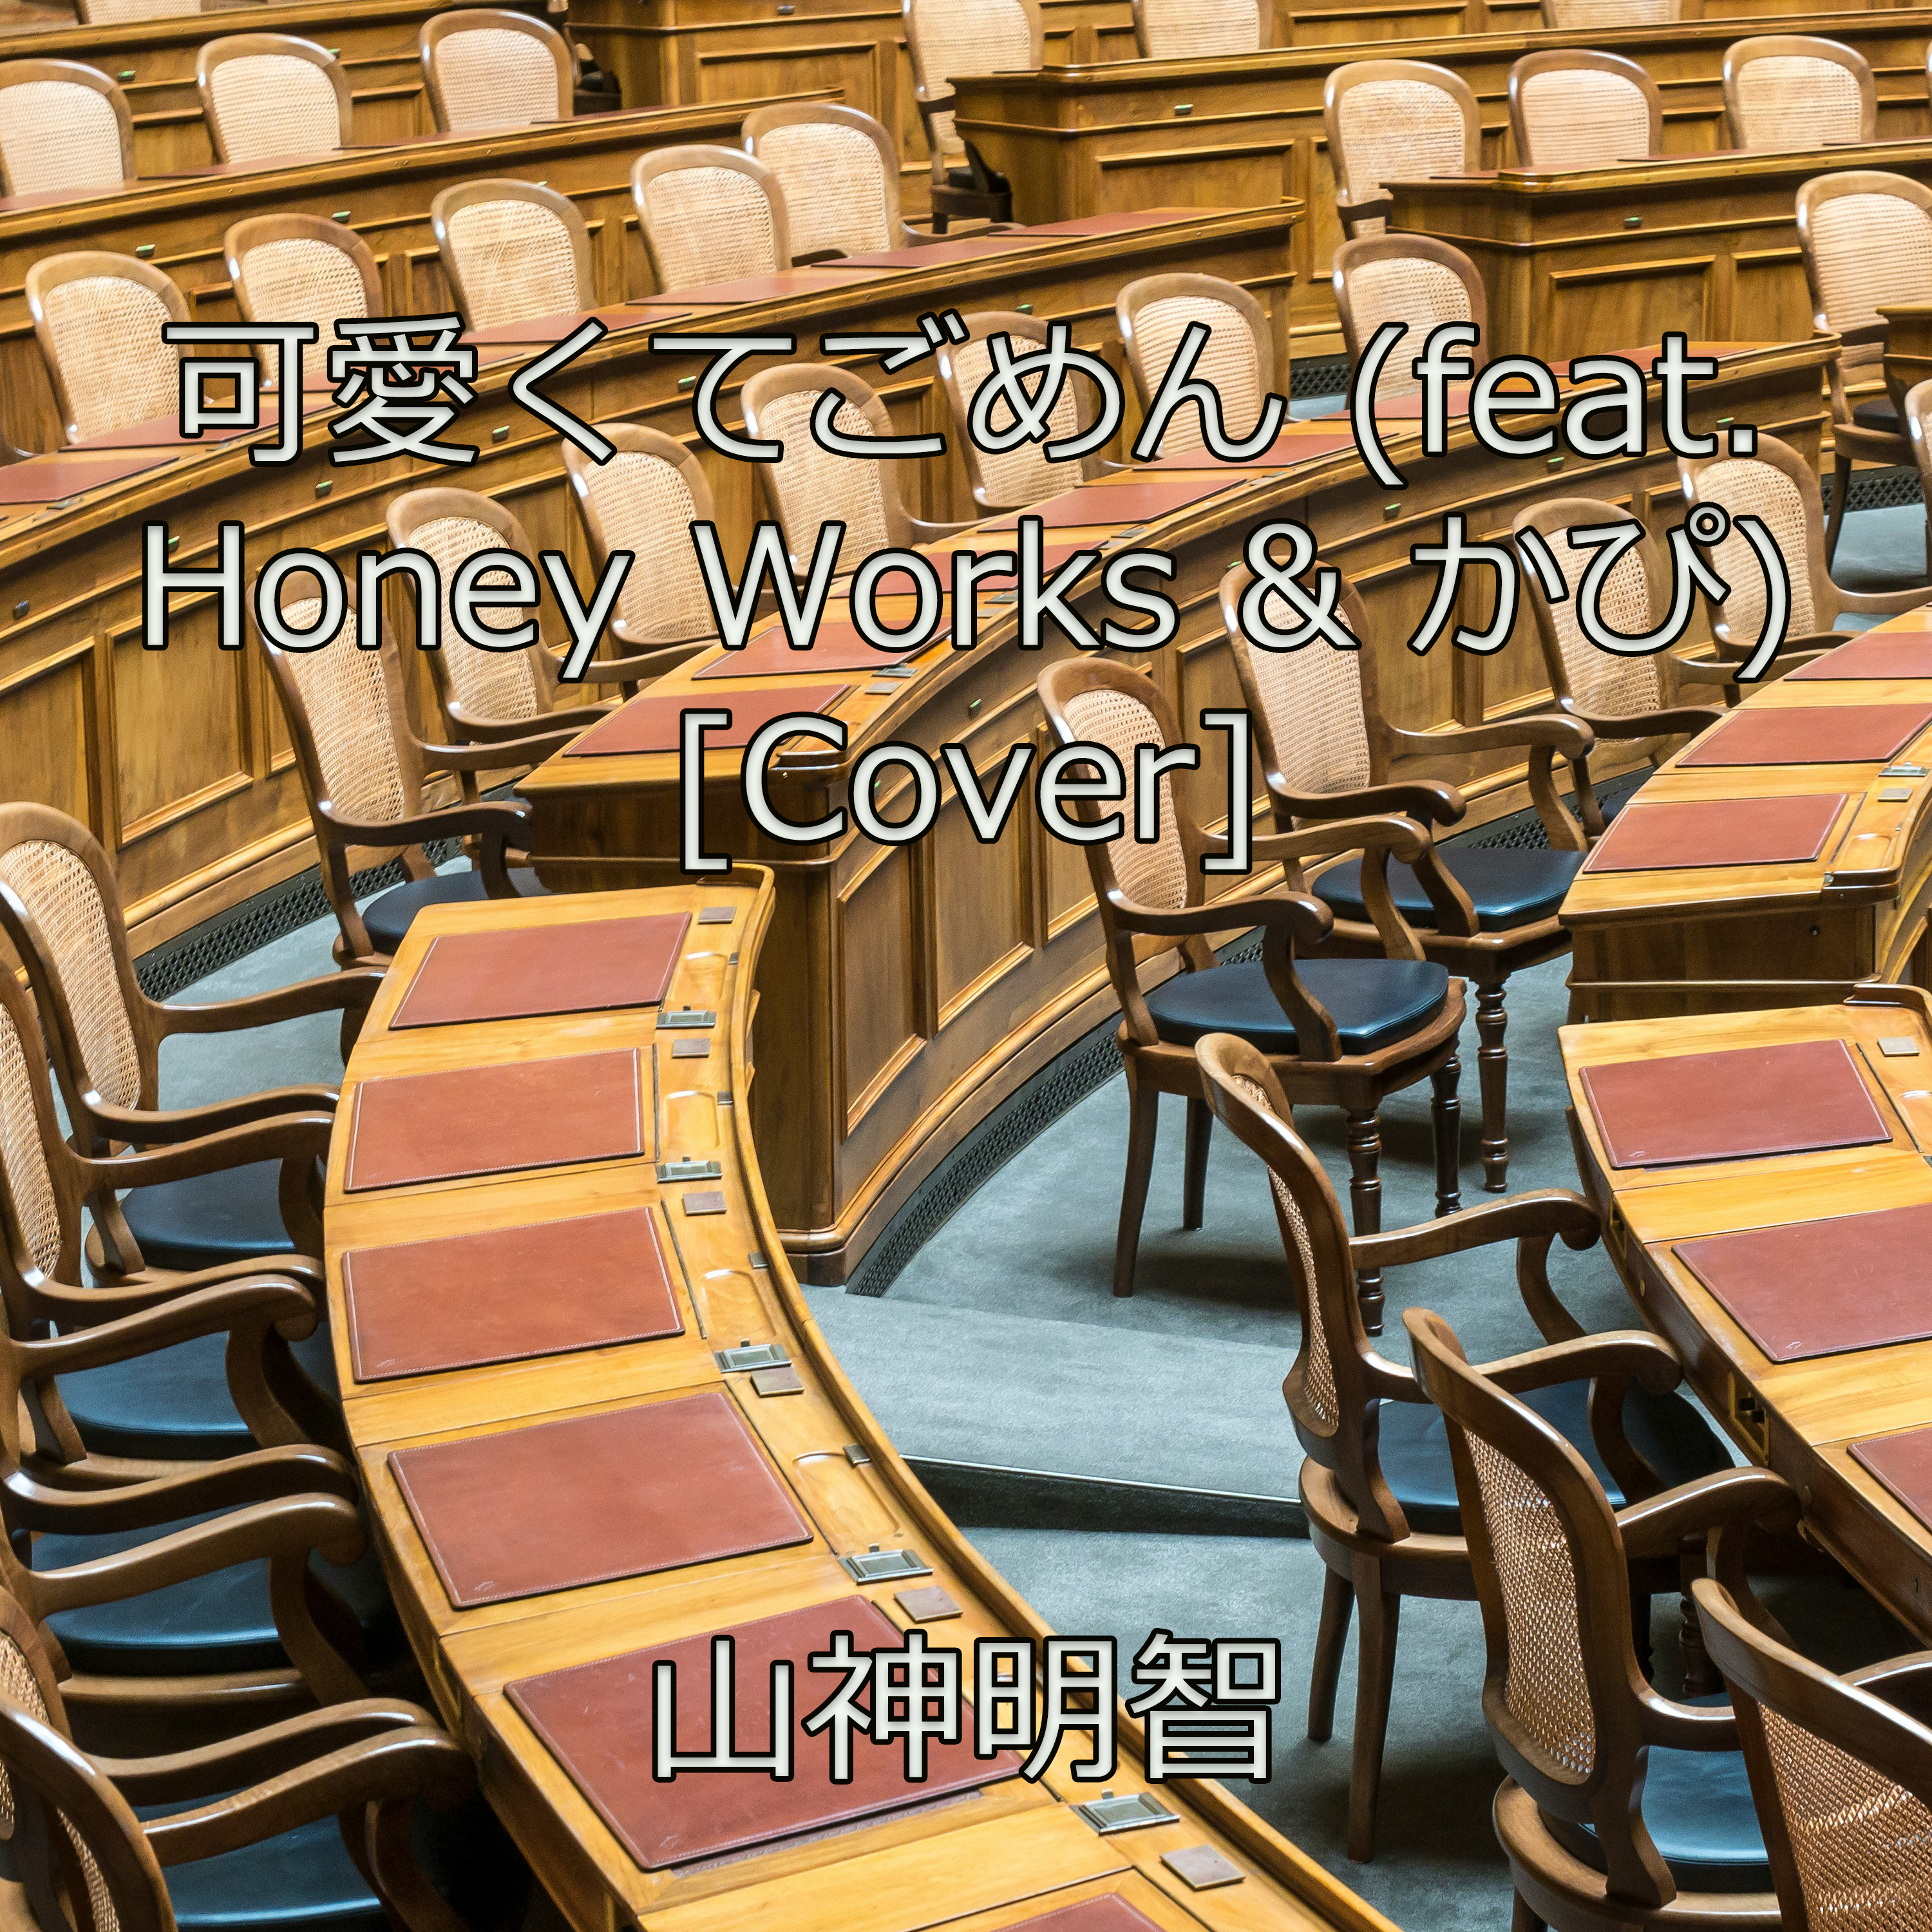 可愛くてごめん (feat. Honey Works & かぴ) [Cover]